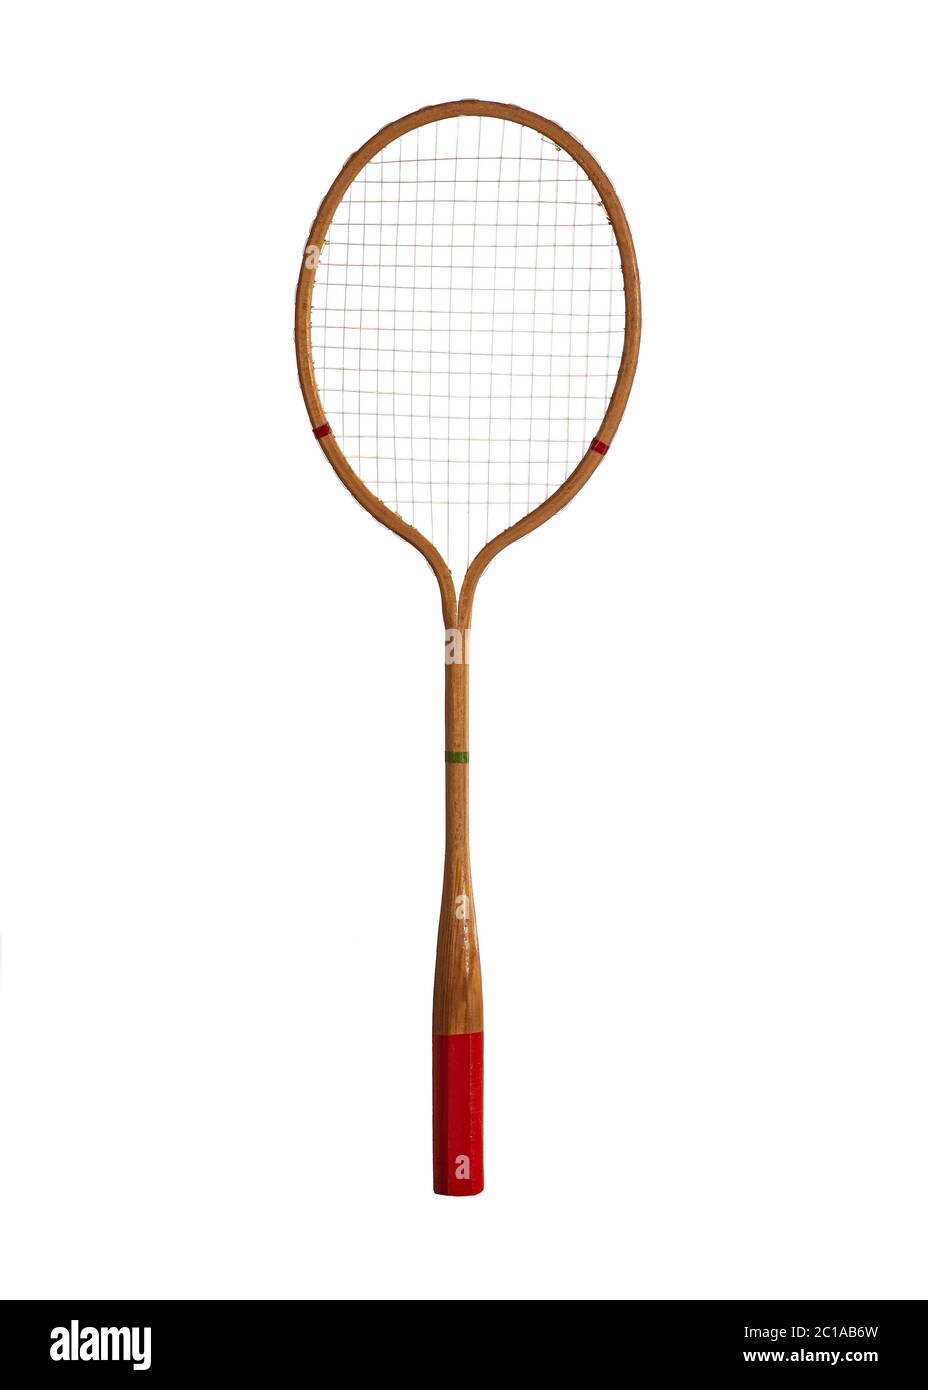 Raquette de badminton en bois vintage isolée sur fond blanc Photo Stock -  Alamy